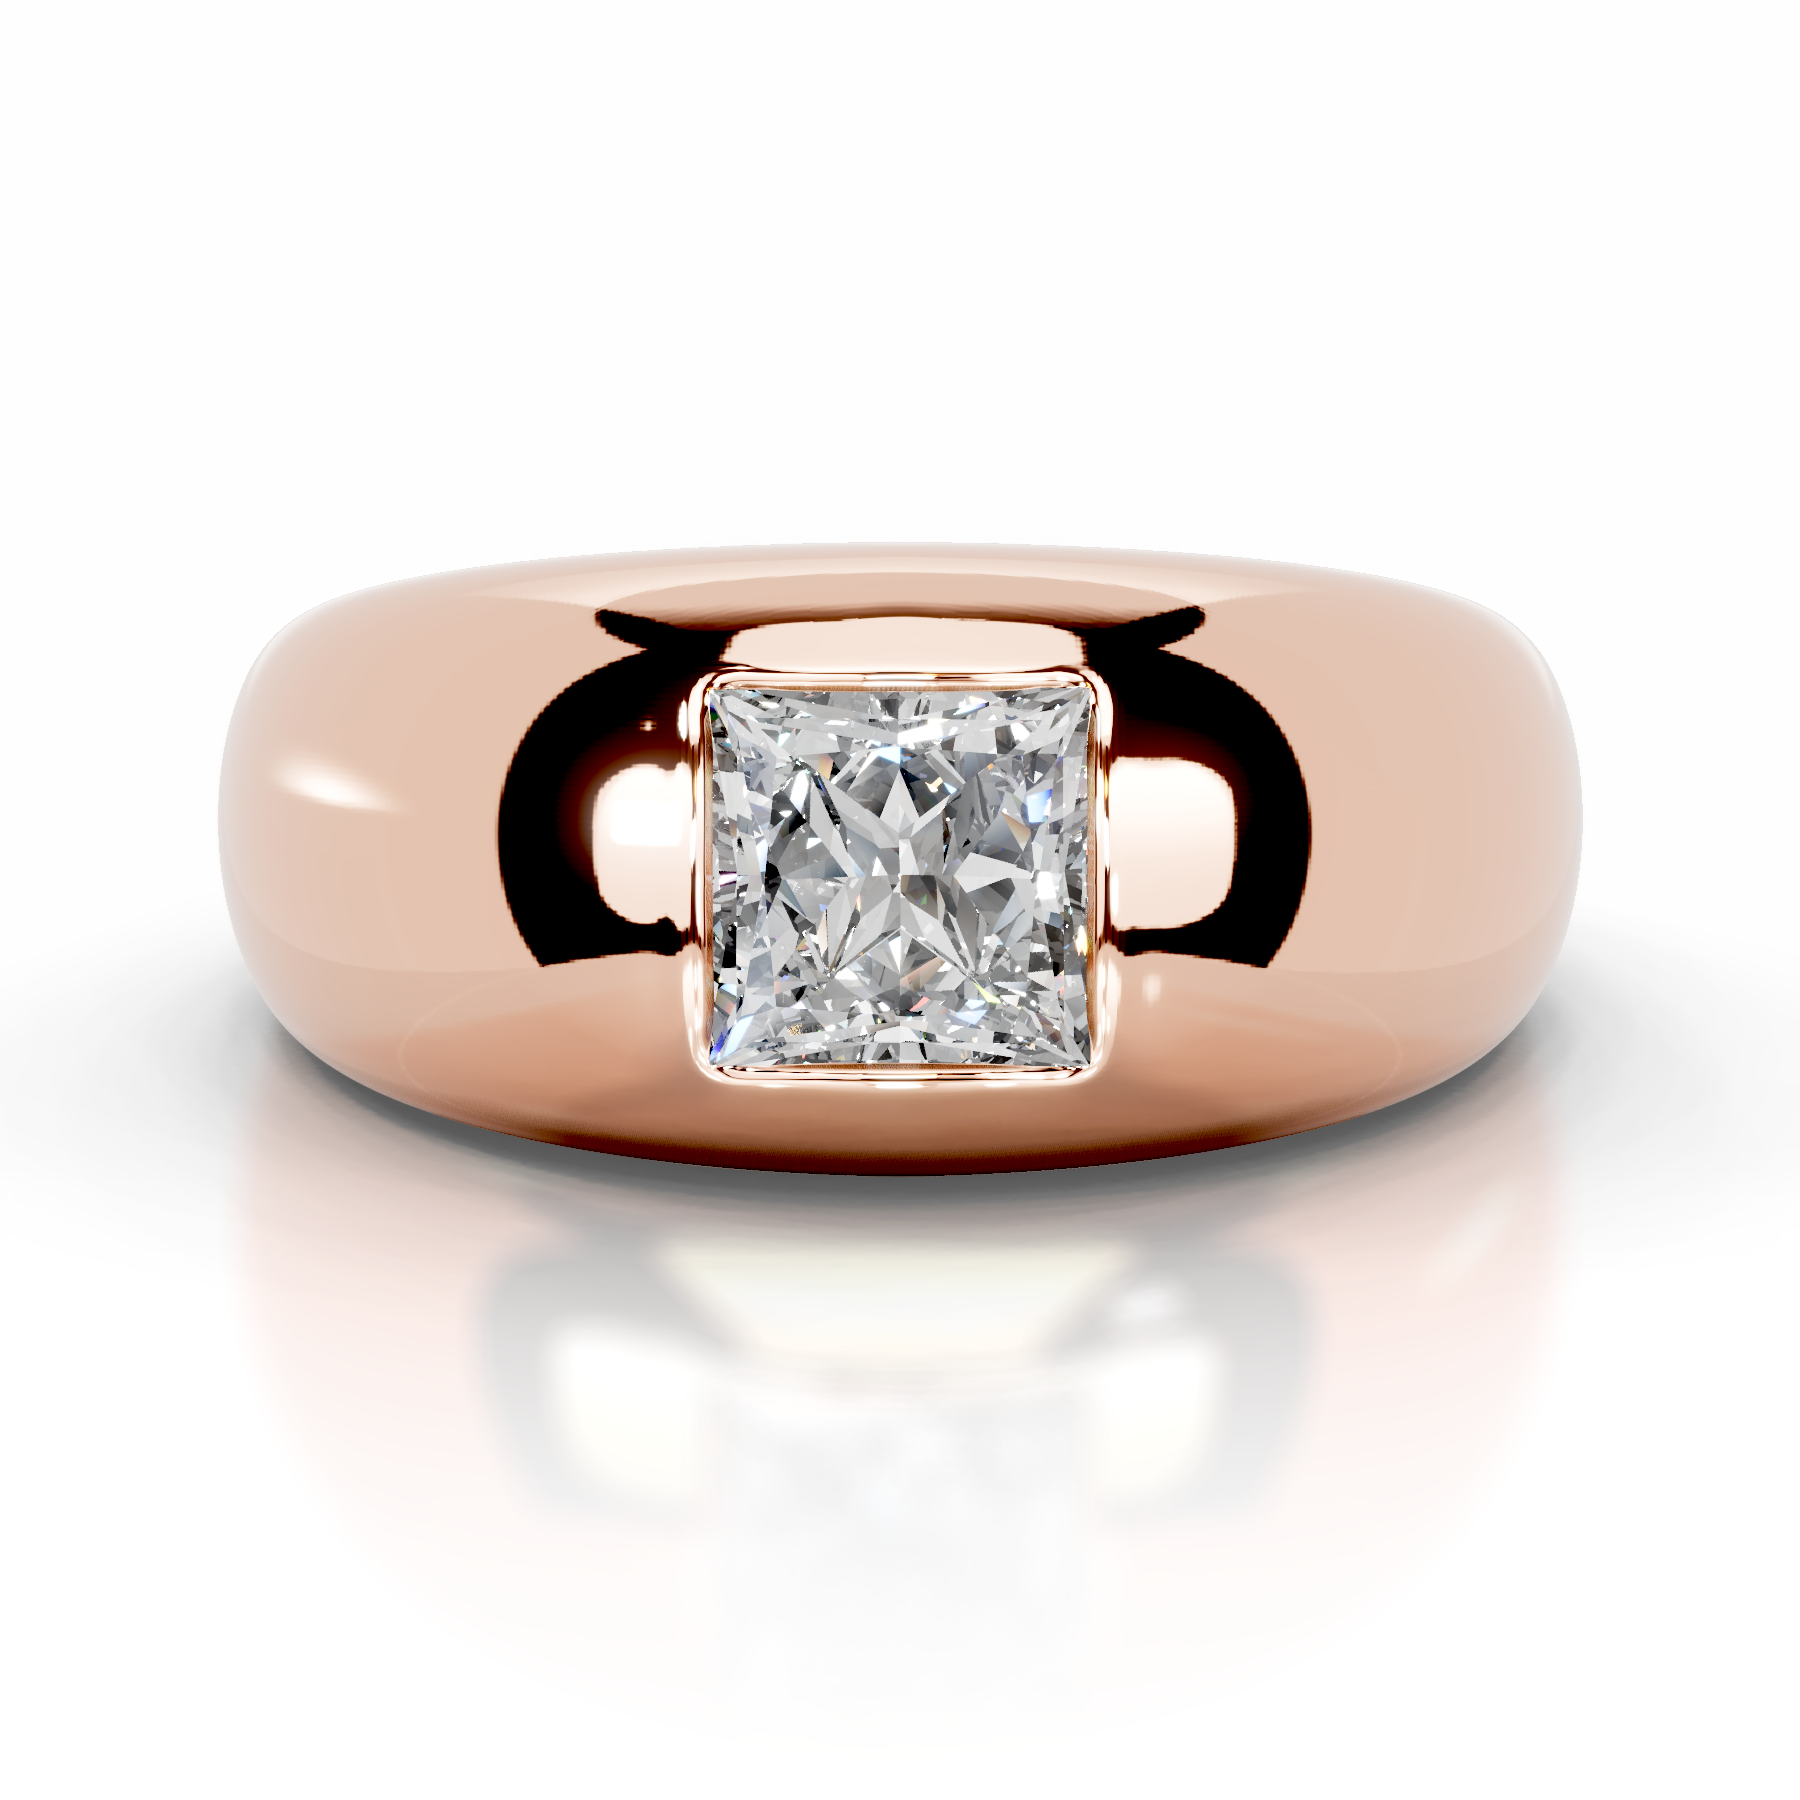 Aaliyah Diamond Engagement Ring   (1 Carat) -14K Rose Gold